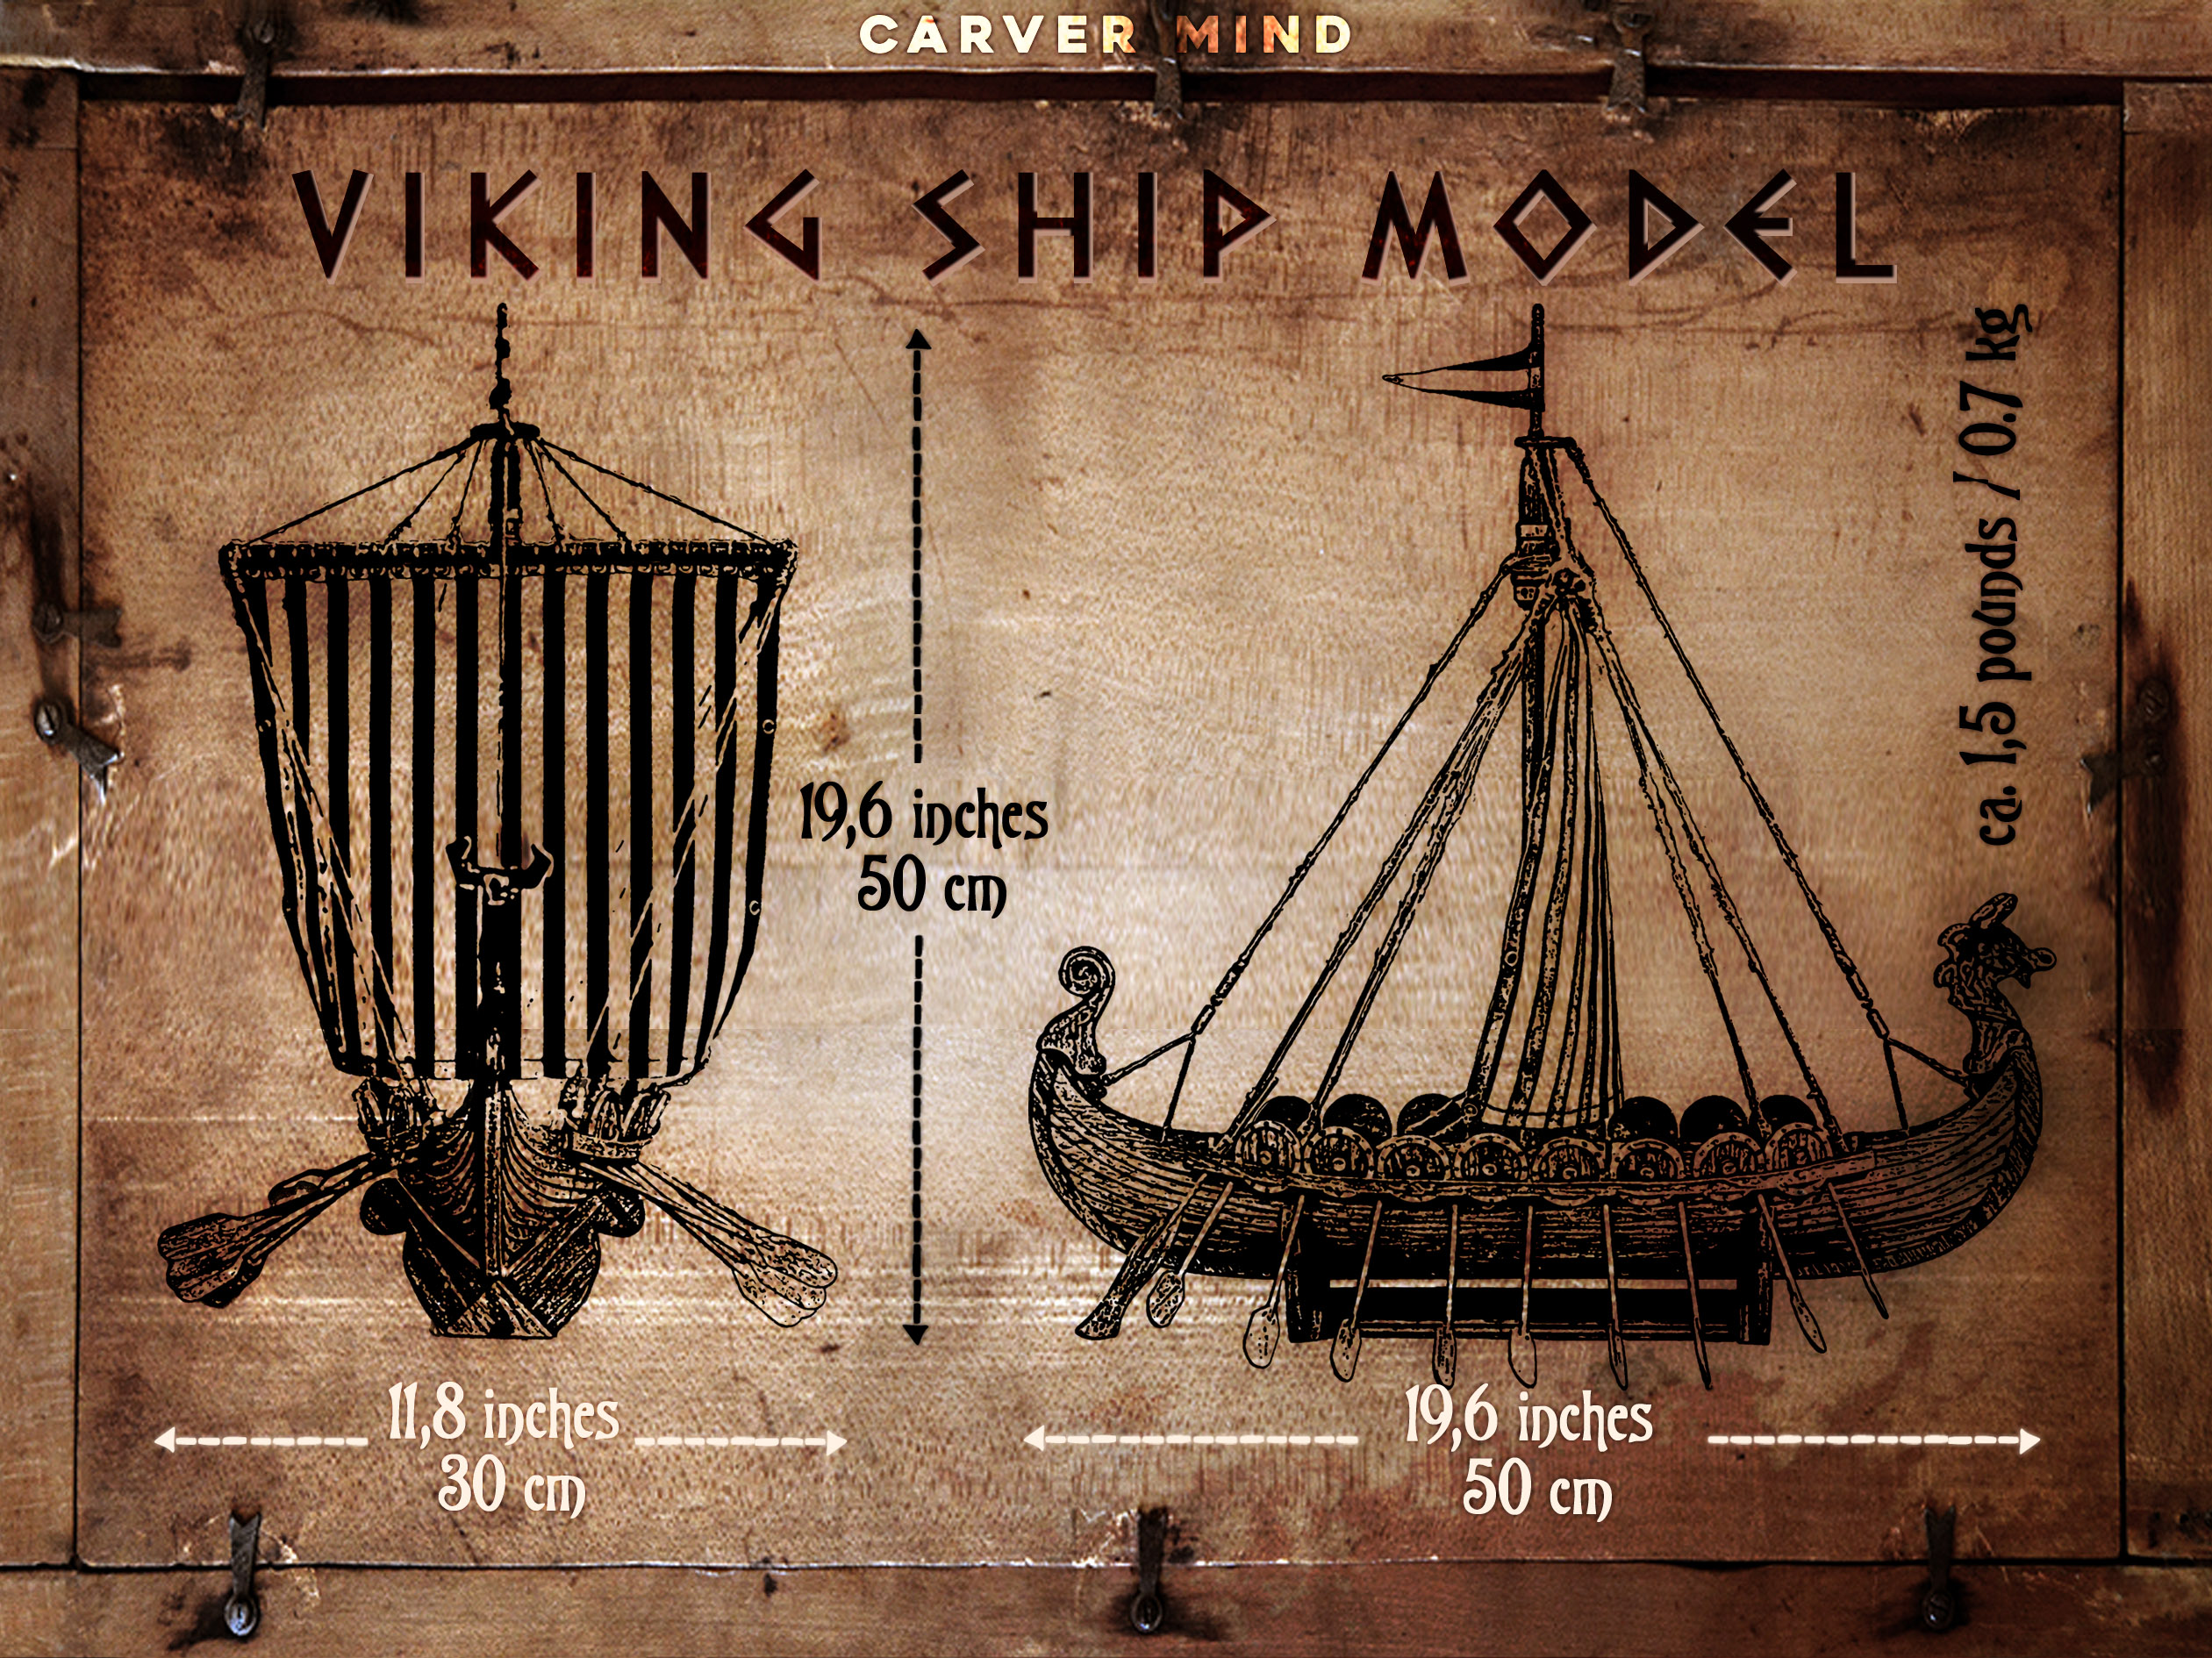 Viking ship model size